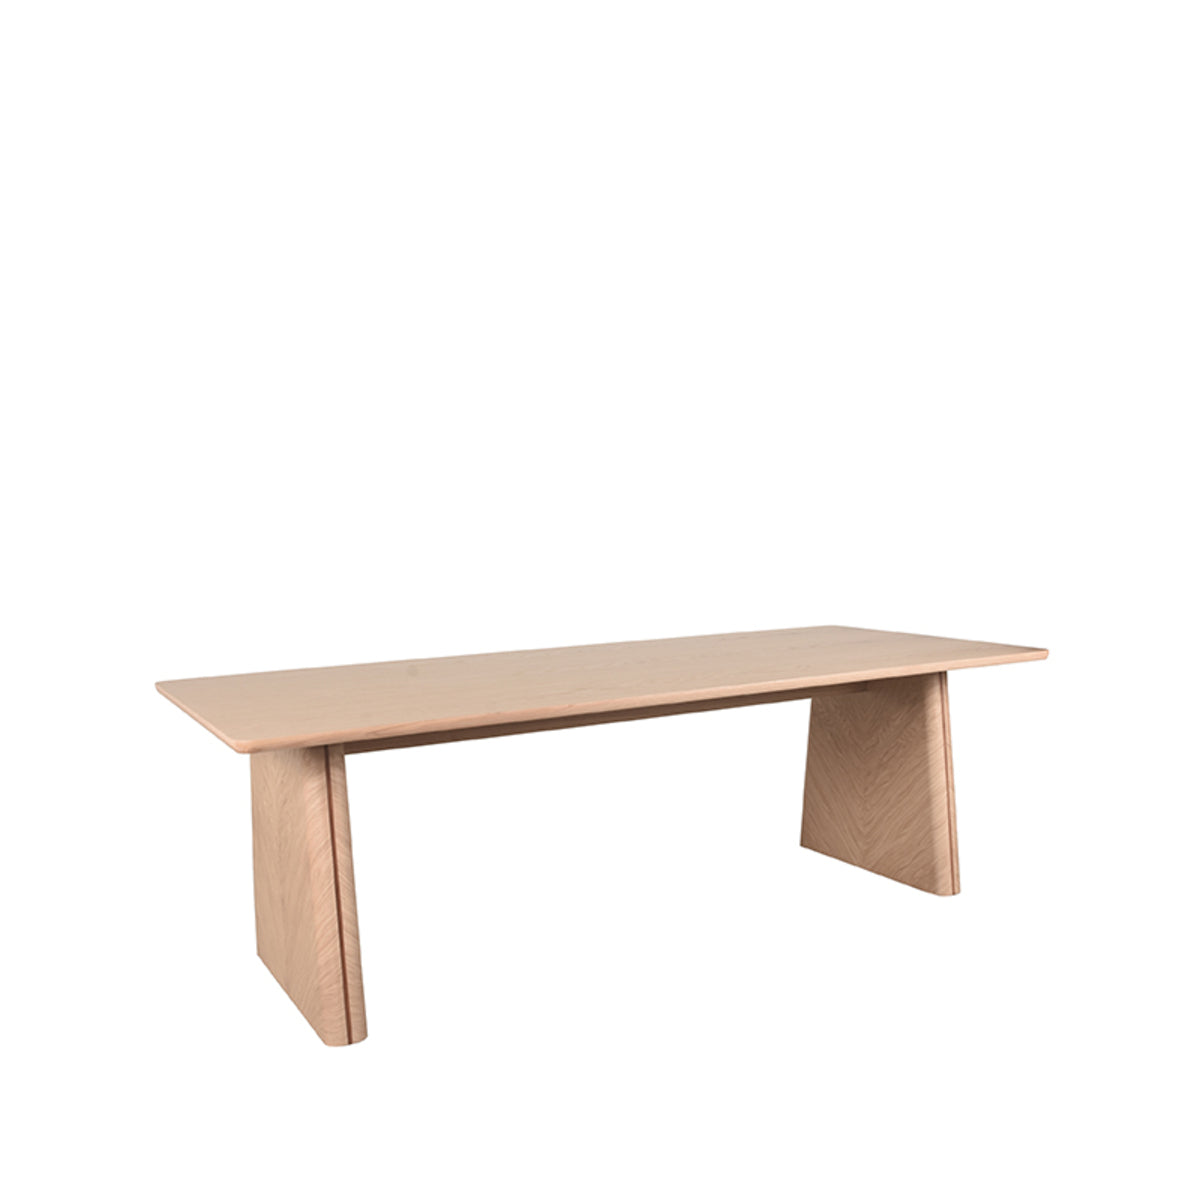 LABEL51 Jule dining room table - Natural - Oak - 240 cm